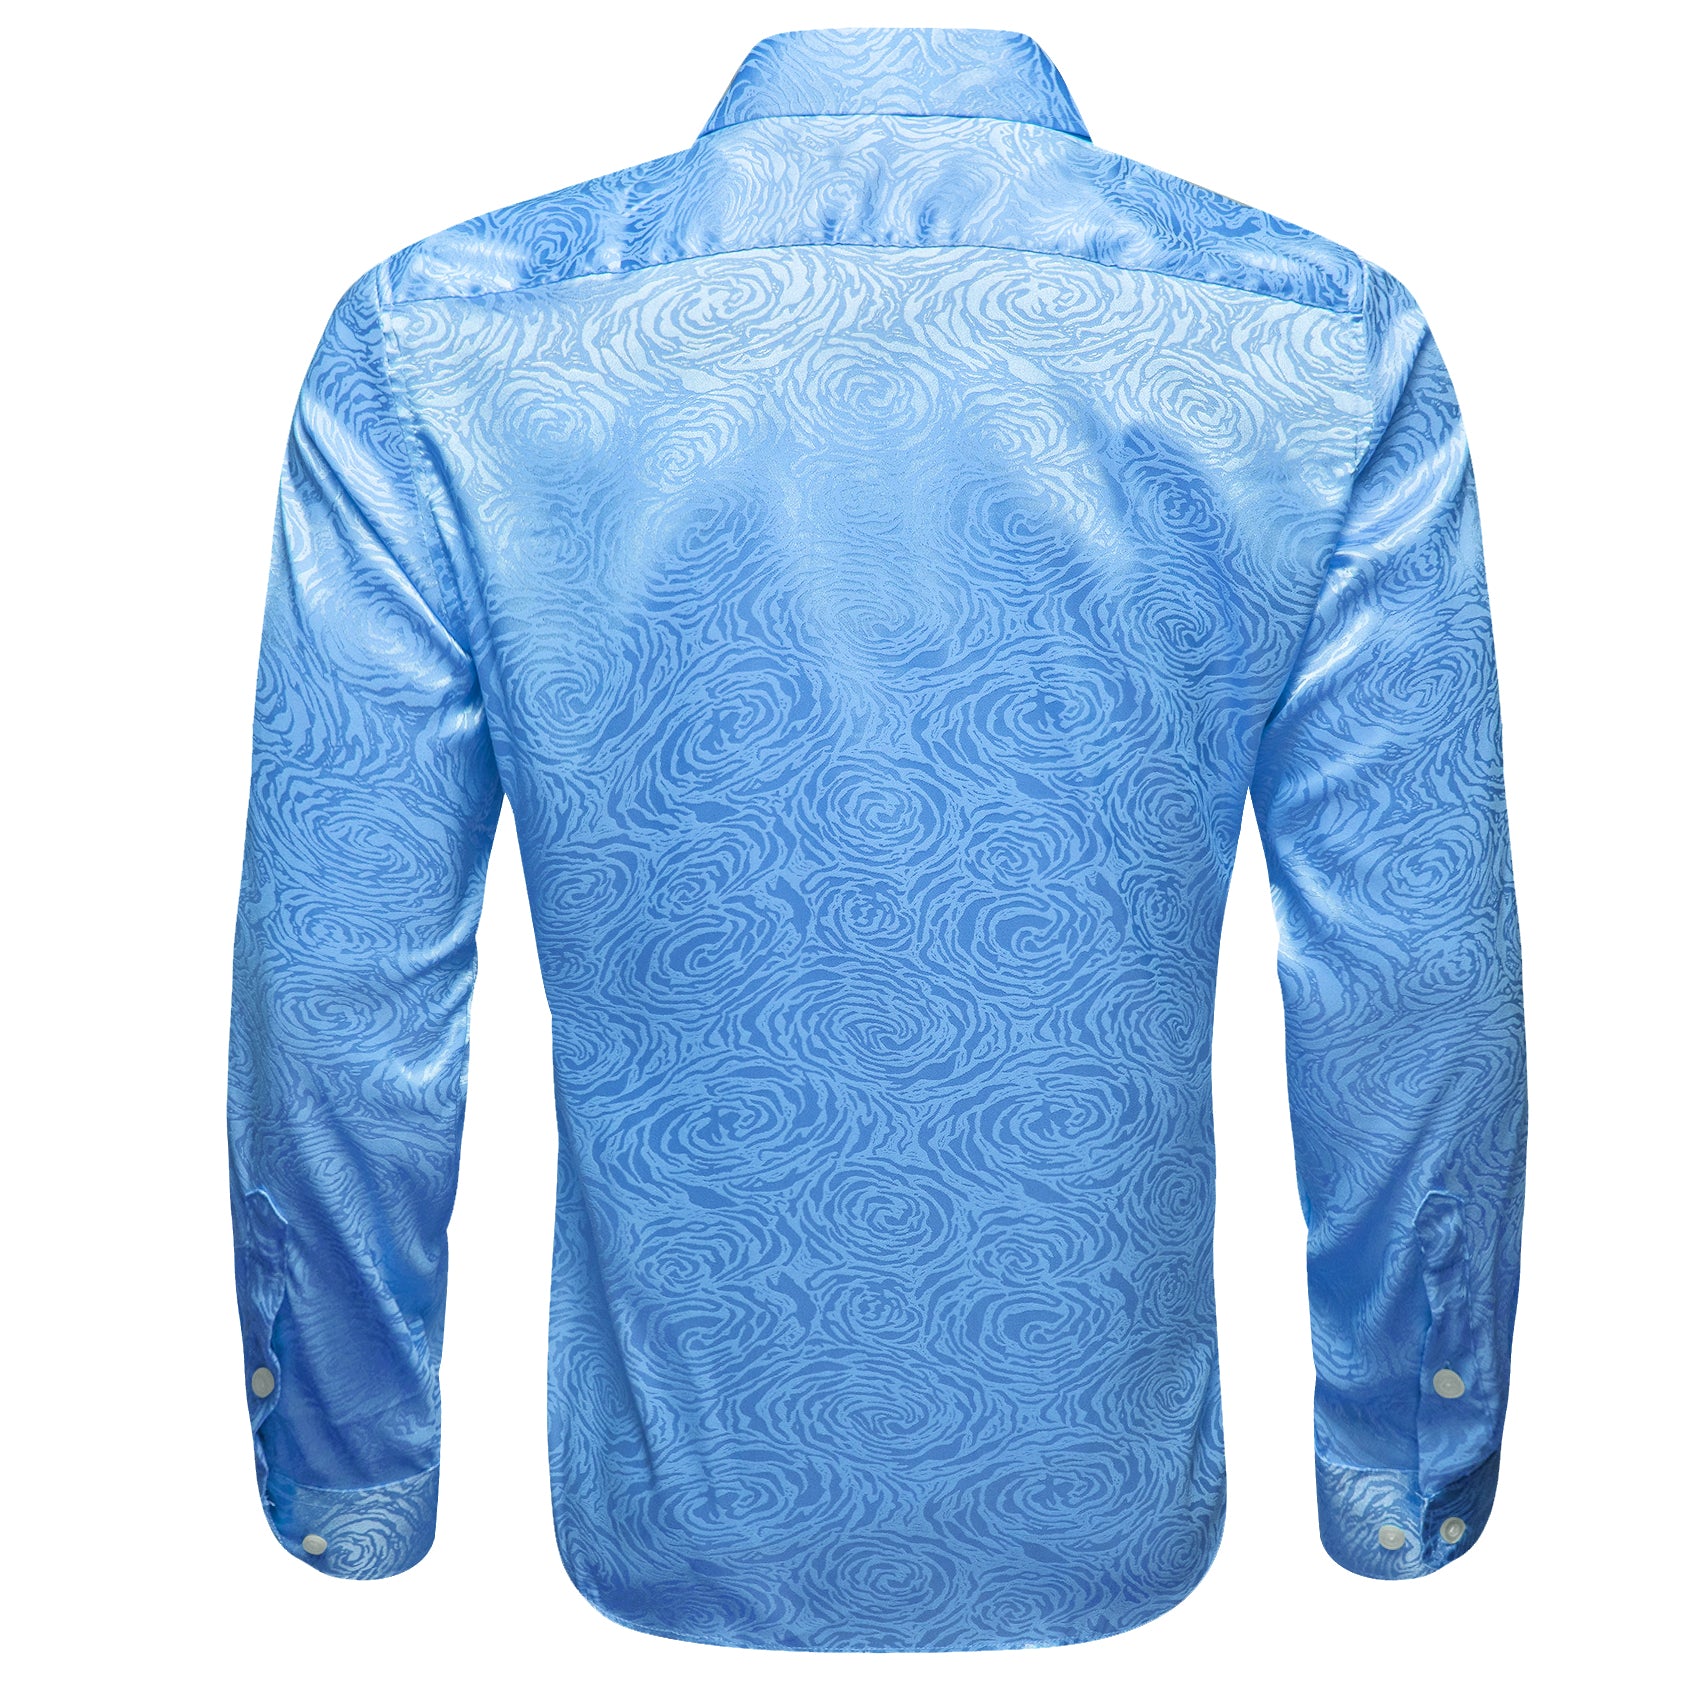 Barry.wang Sky Blue Floral Silk Men's Shirt